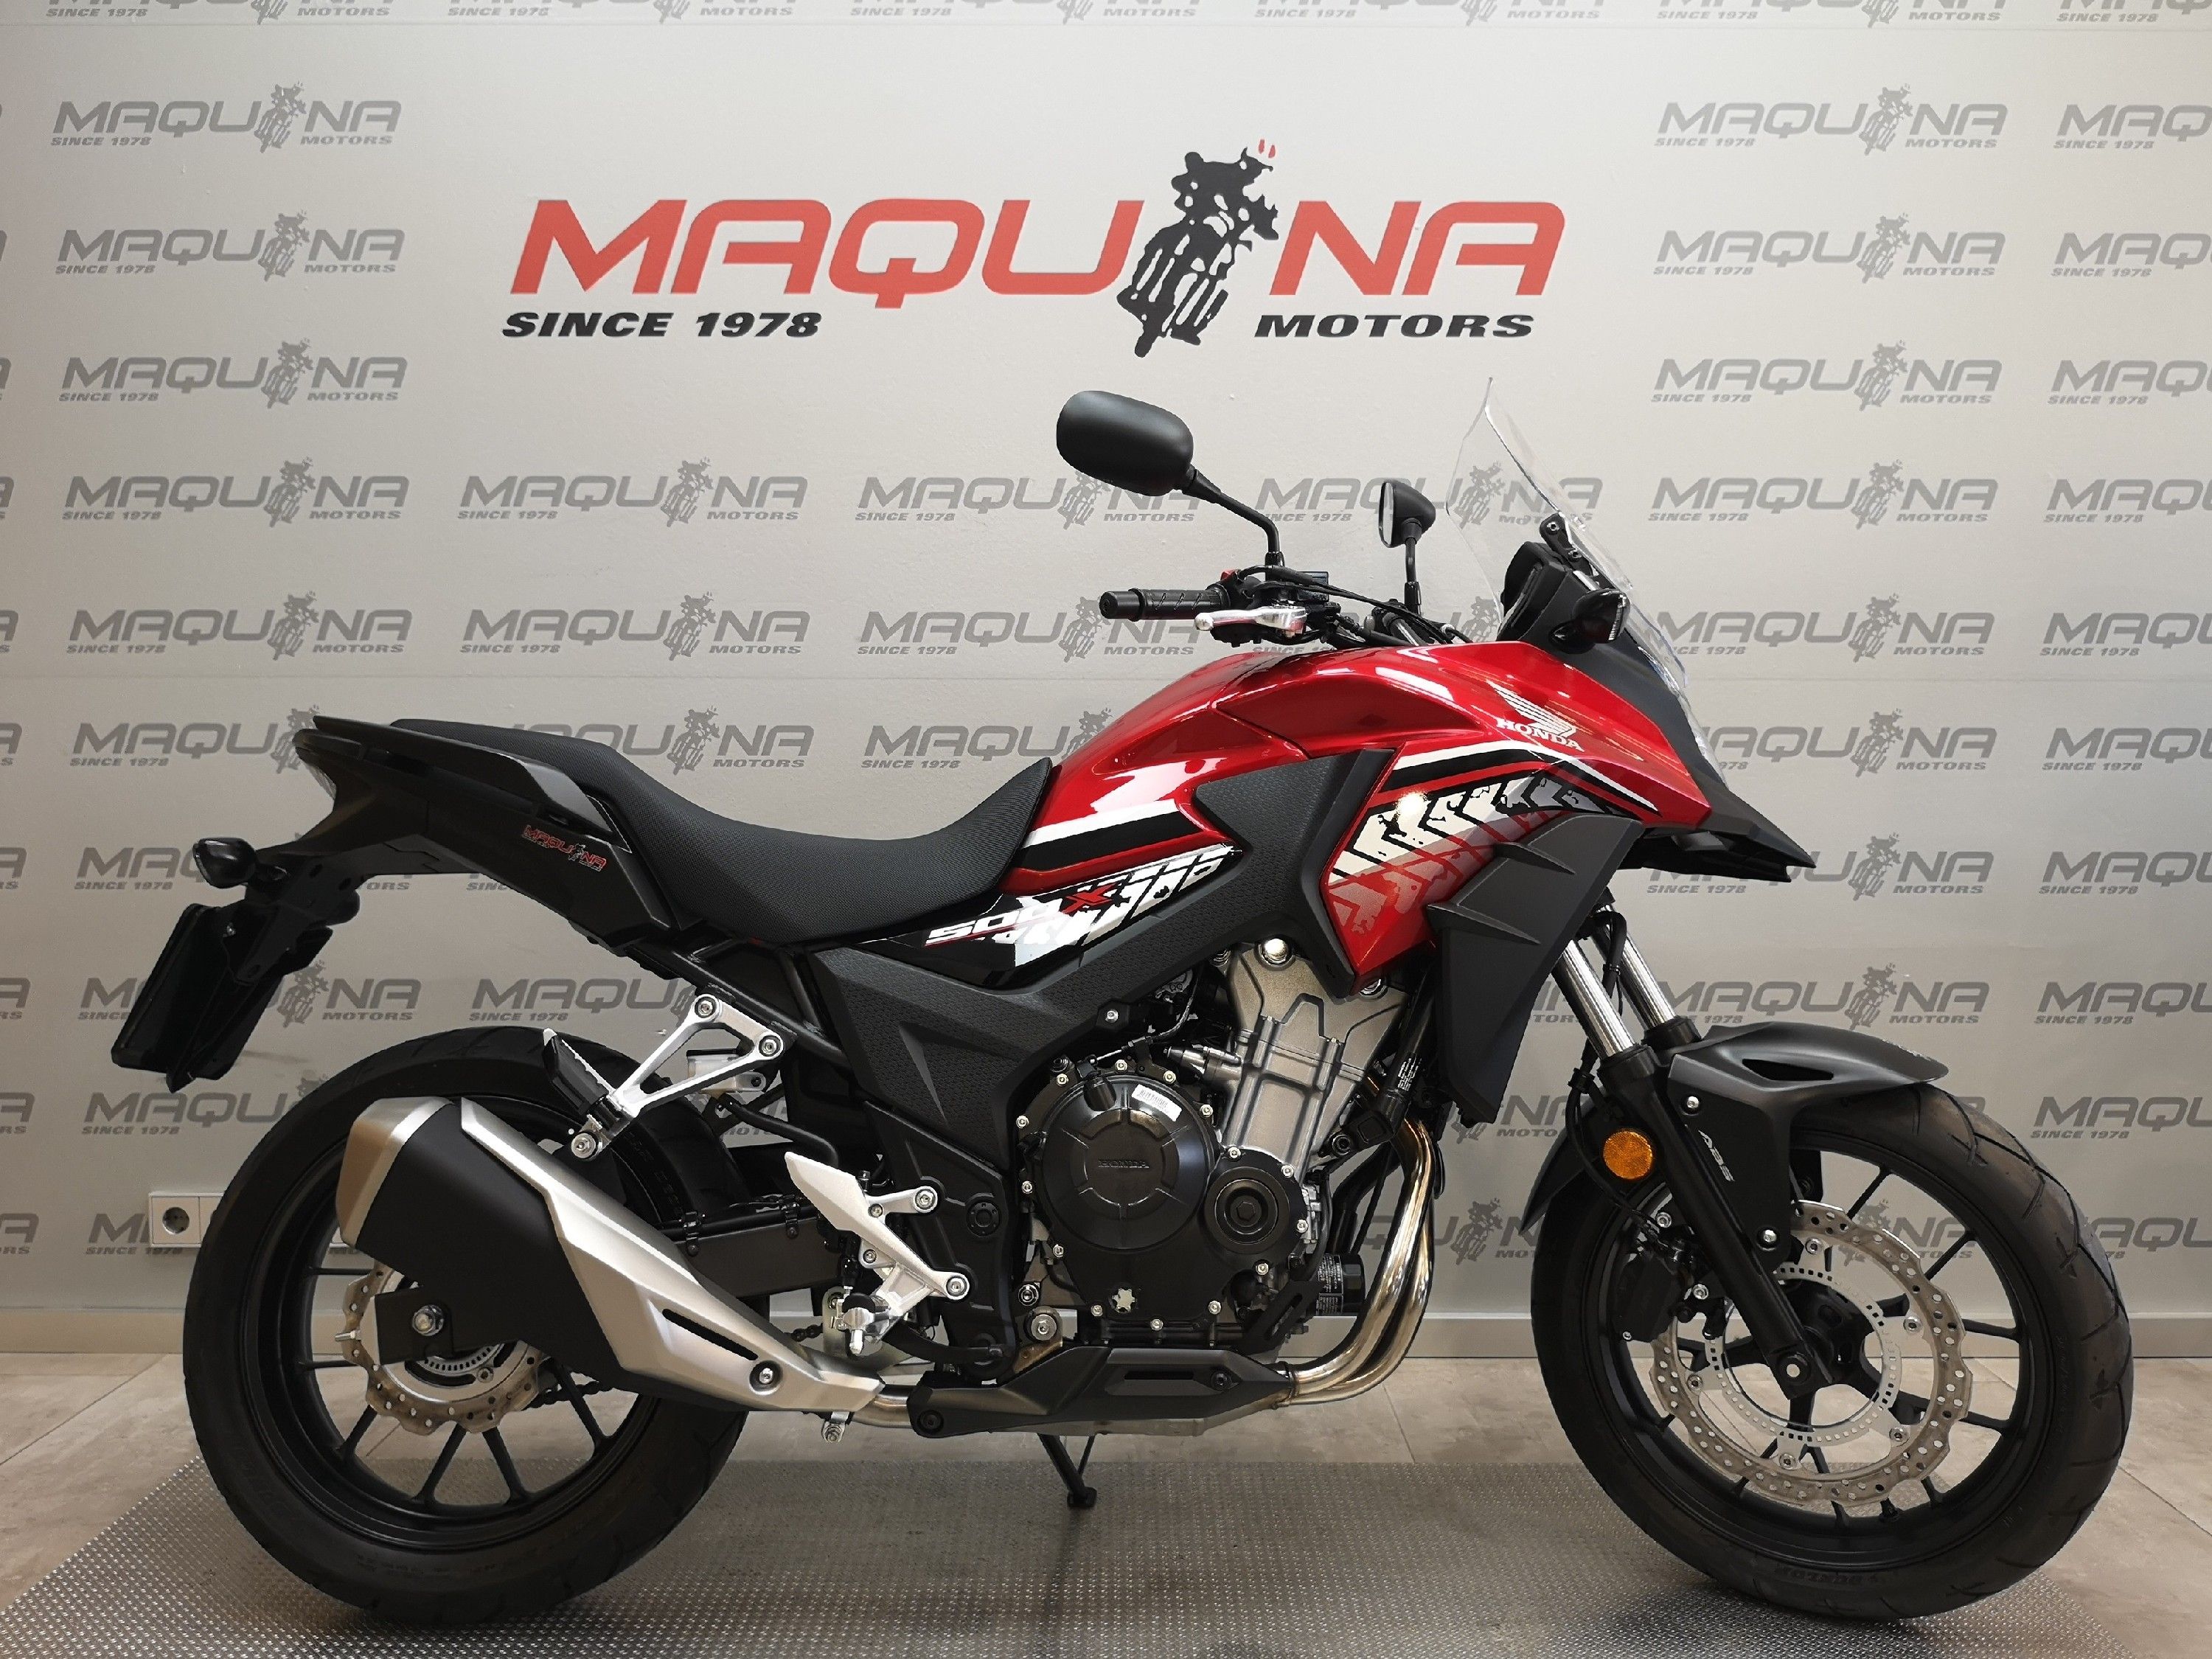 CB 500 X – Maquina Motors motos ocasión